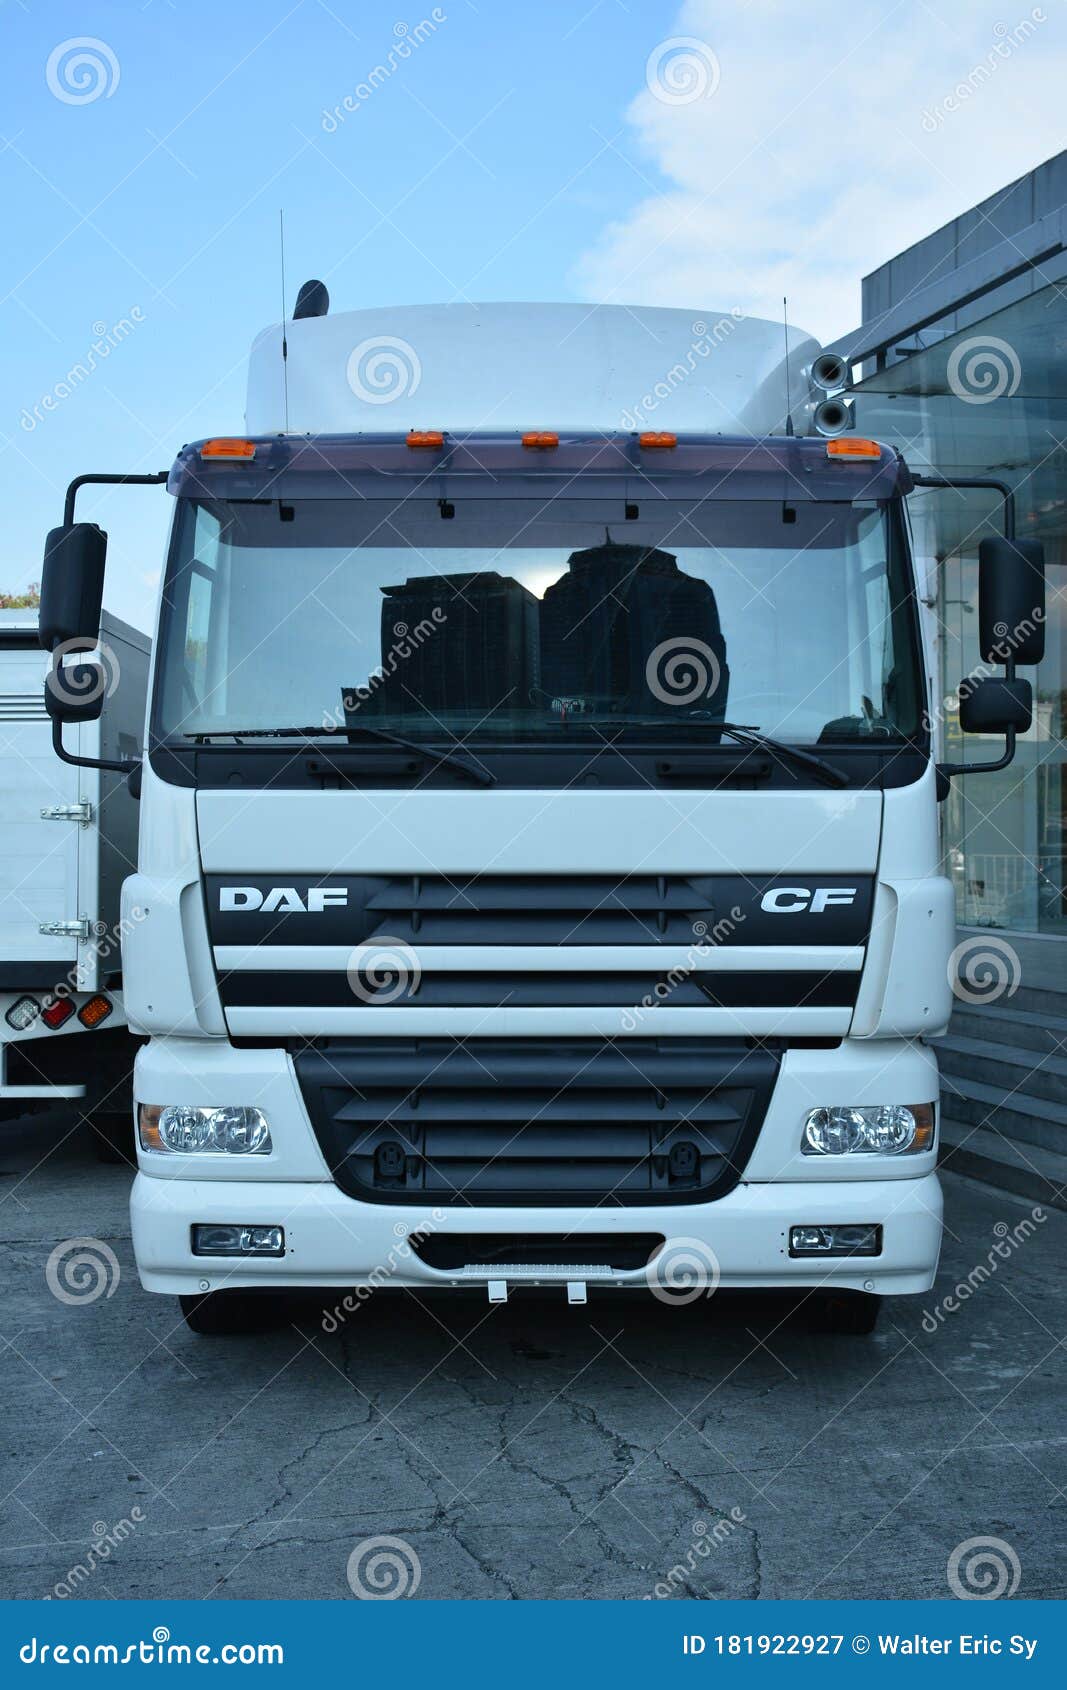 DAF Trucks PH